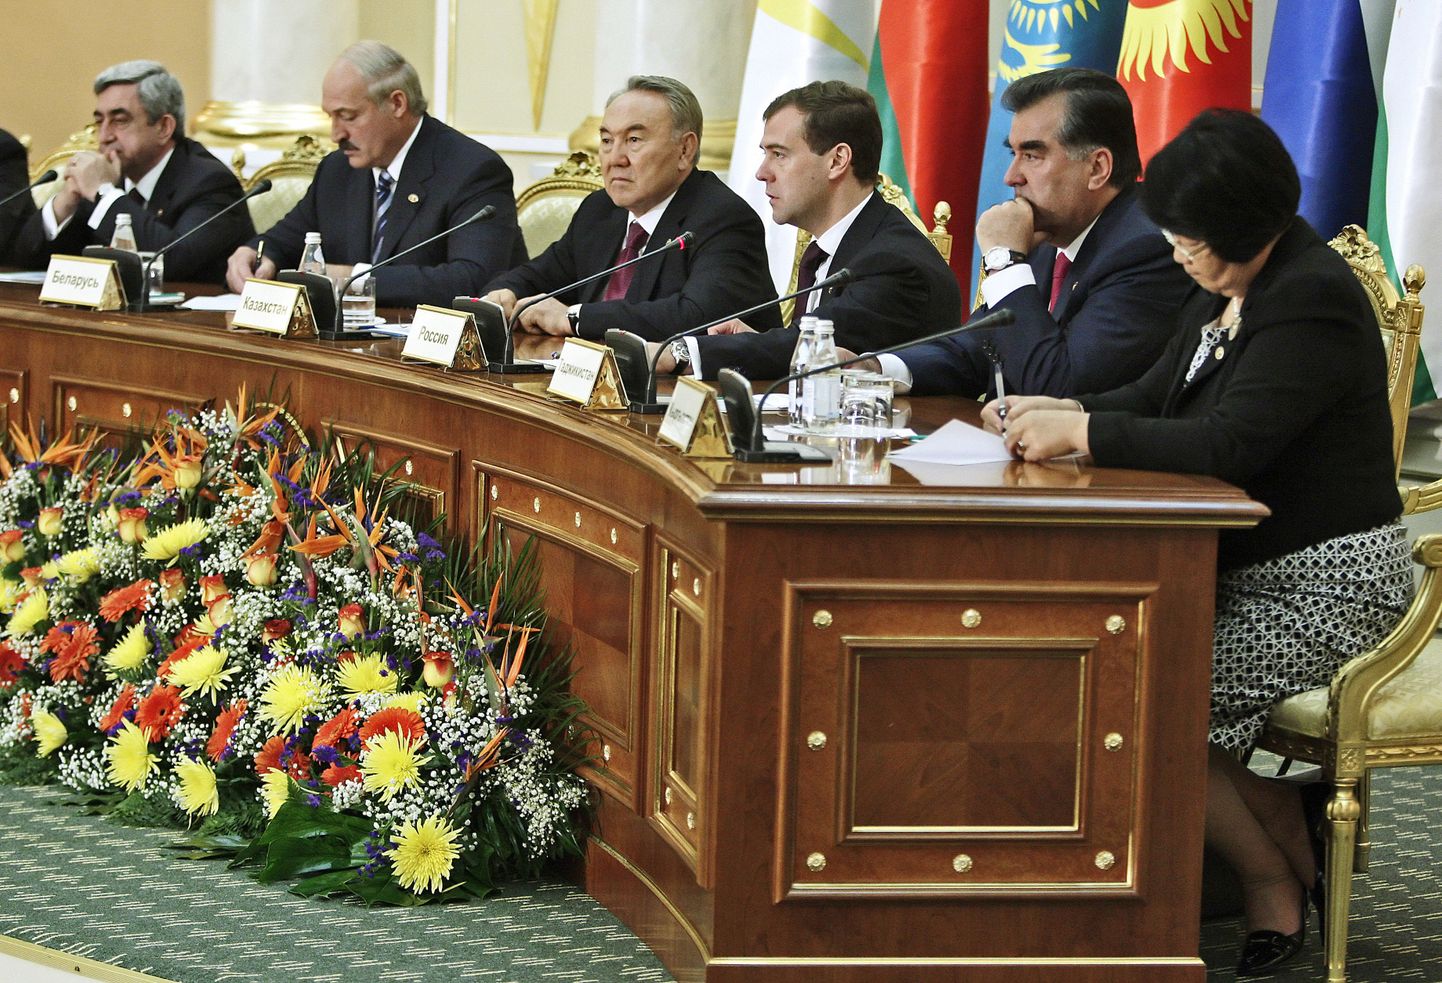 Armeenia, Valgevene, Kasahstani, Venemaa, Tadžikistani ja Kõrgõzstani juhid arutasid täna Astanas majandusküsimusi.